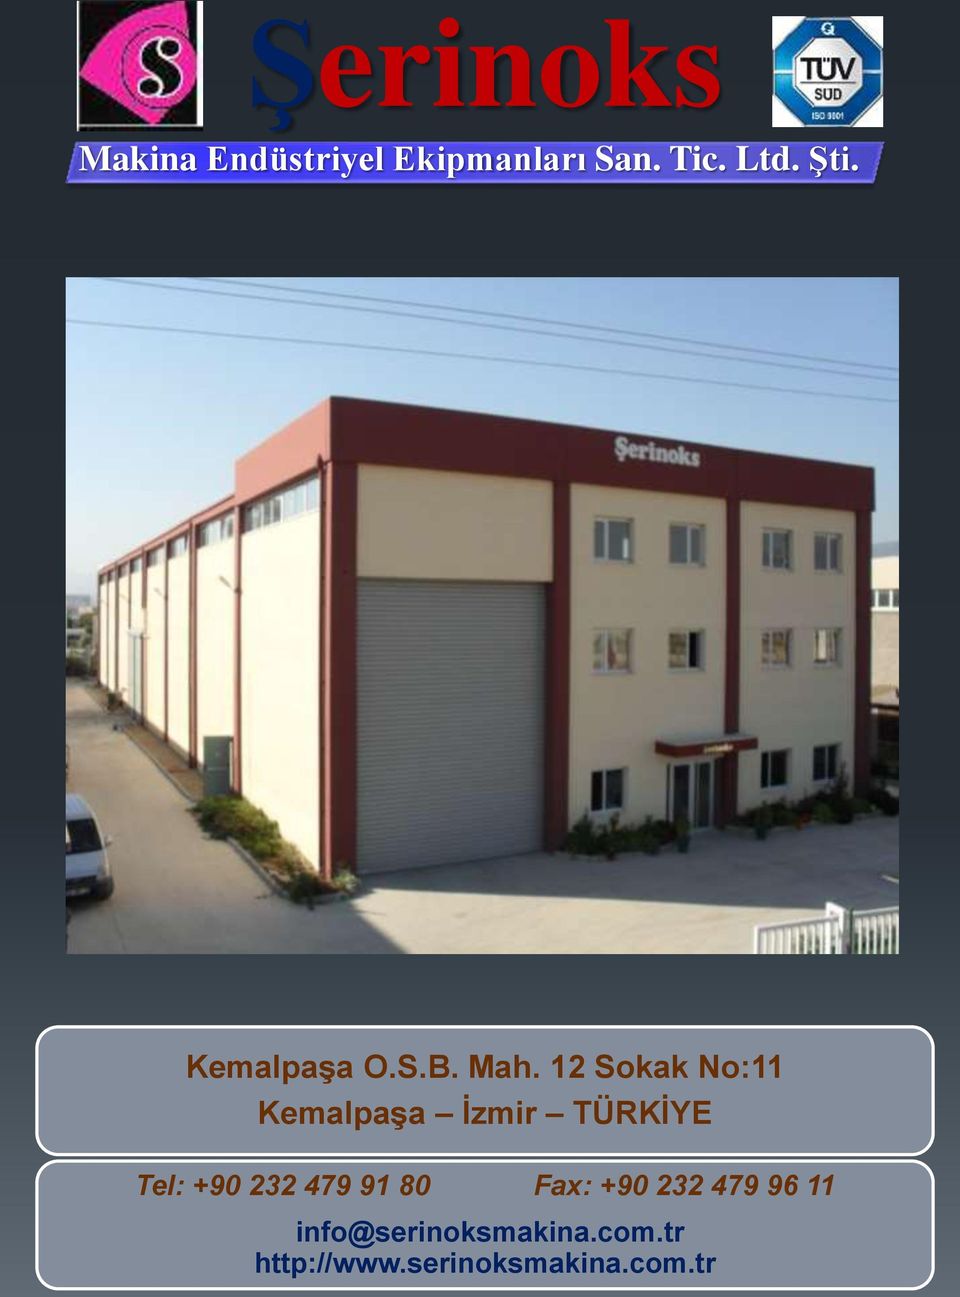 12 Sokak No:11 Kemalpaşa İzmir TÜRKİYE Tel: +90 232 479